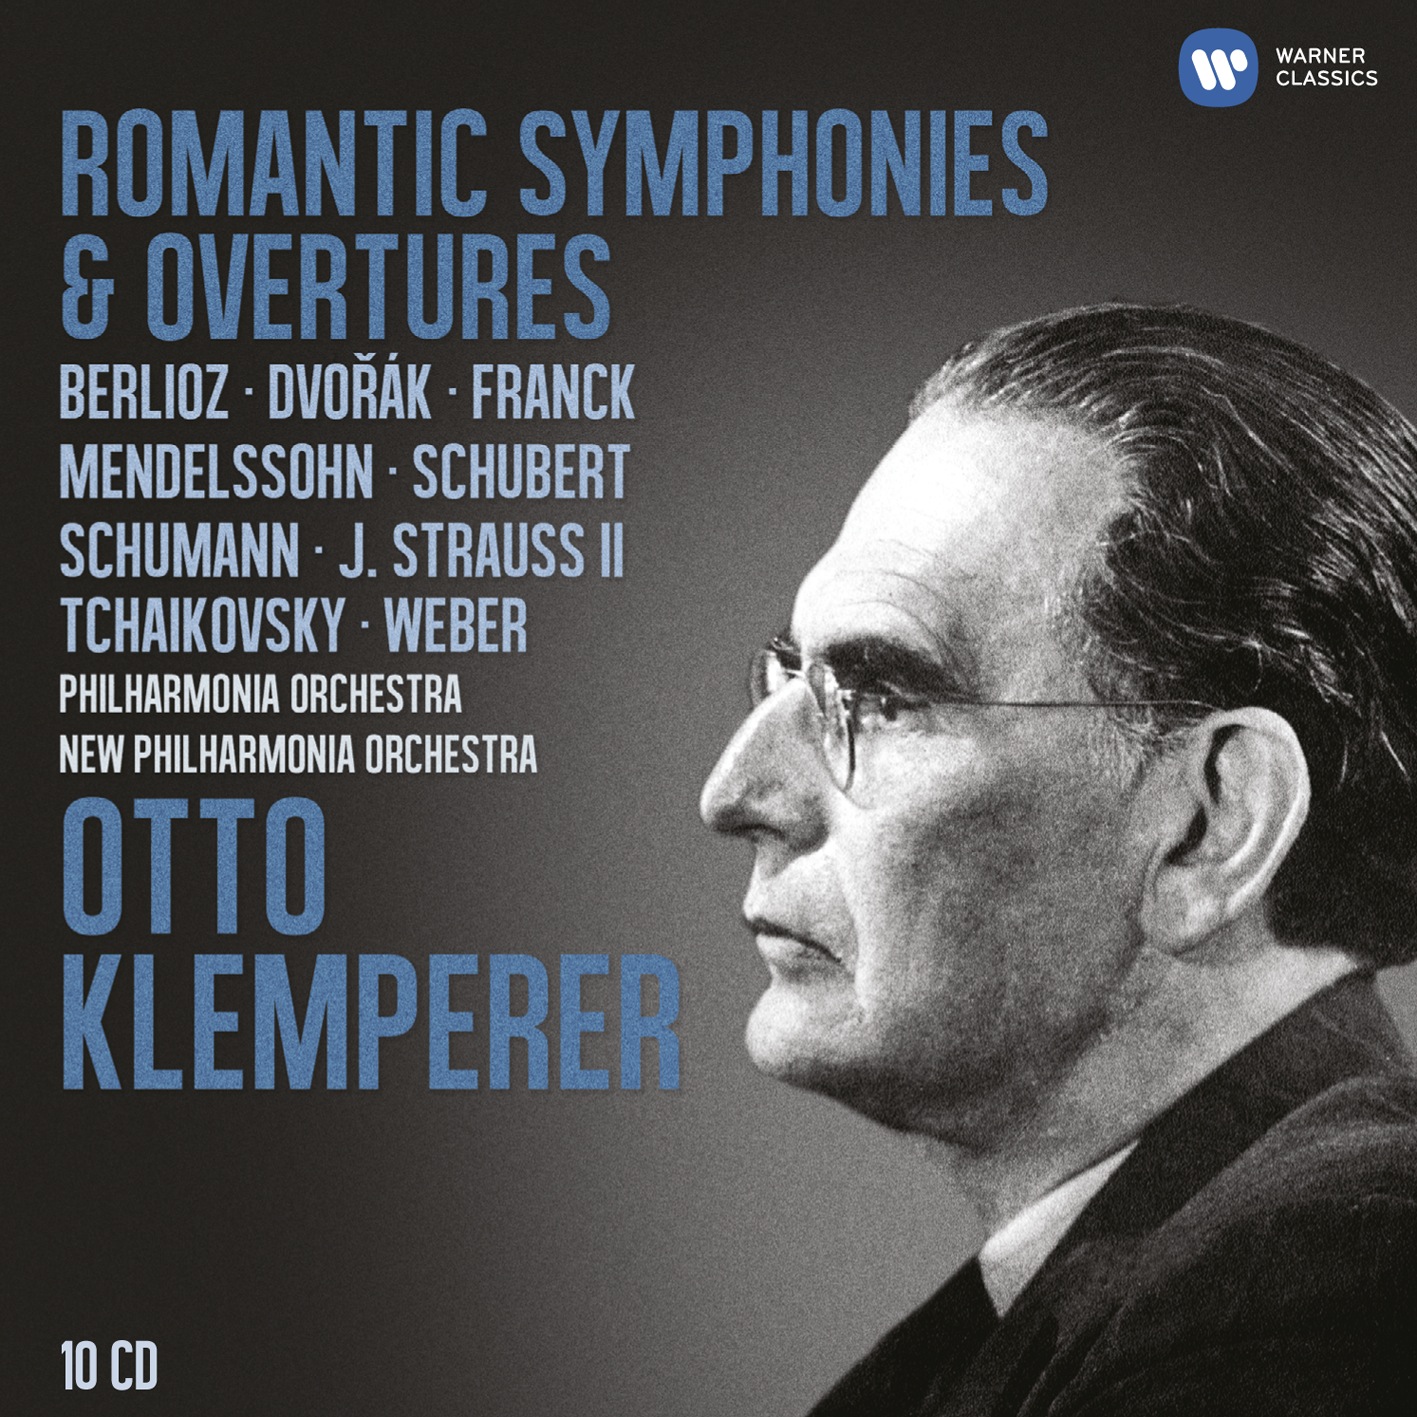 Romantic Symphonies and Overtures | Warner Classics